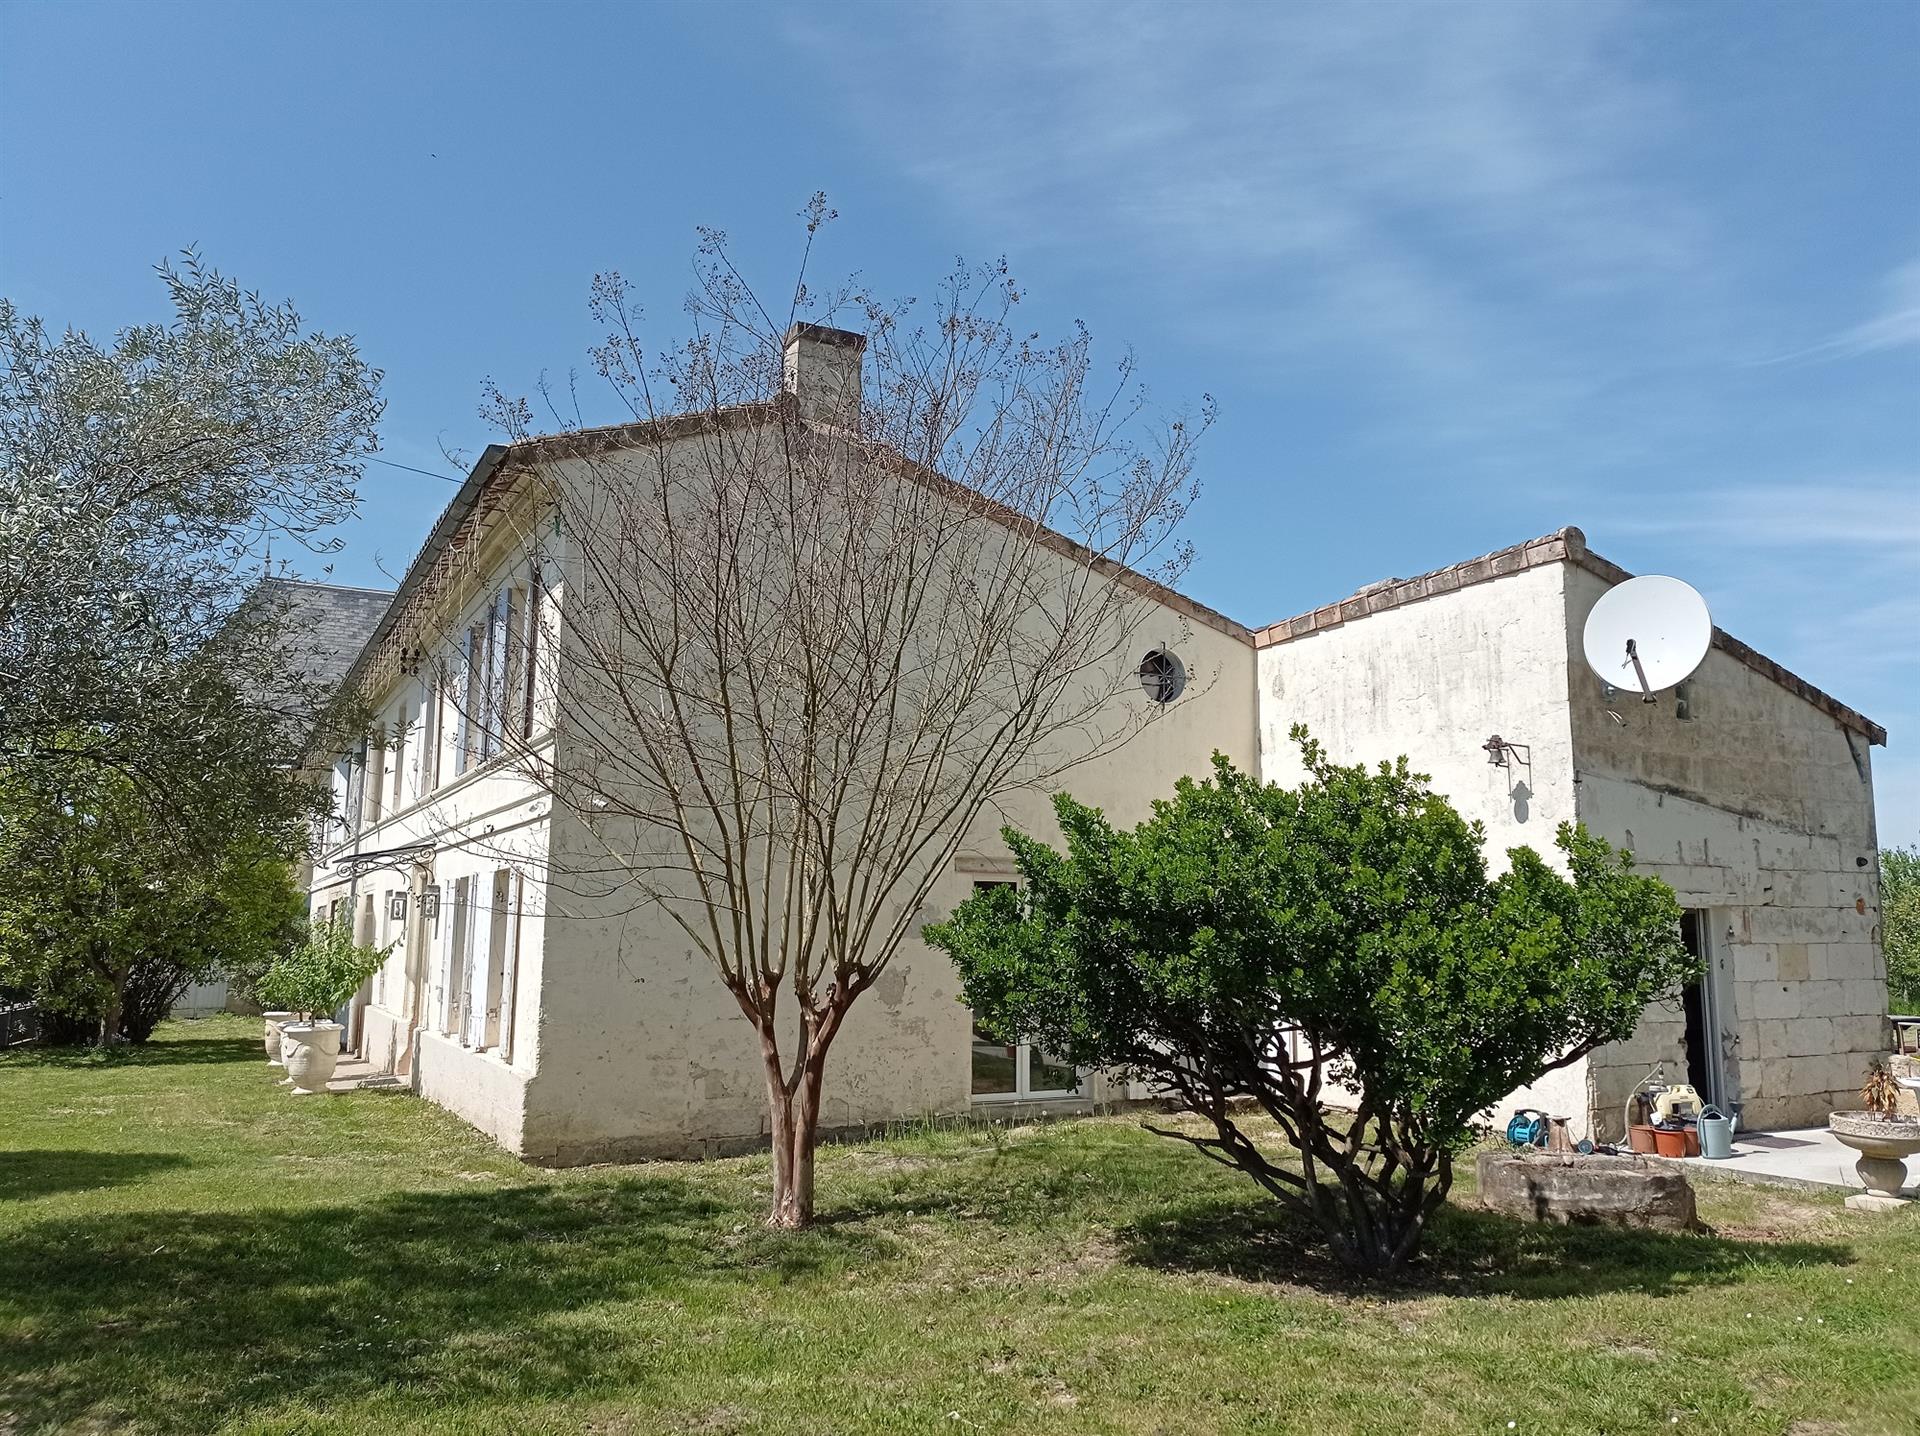 Μια σπάνια ευκαιρία να αγοράσετε ένα μεγάλο πέτρινο εξοχικό σπίτι στο Saint-Andre-de-Cubzac, 20 χιλ